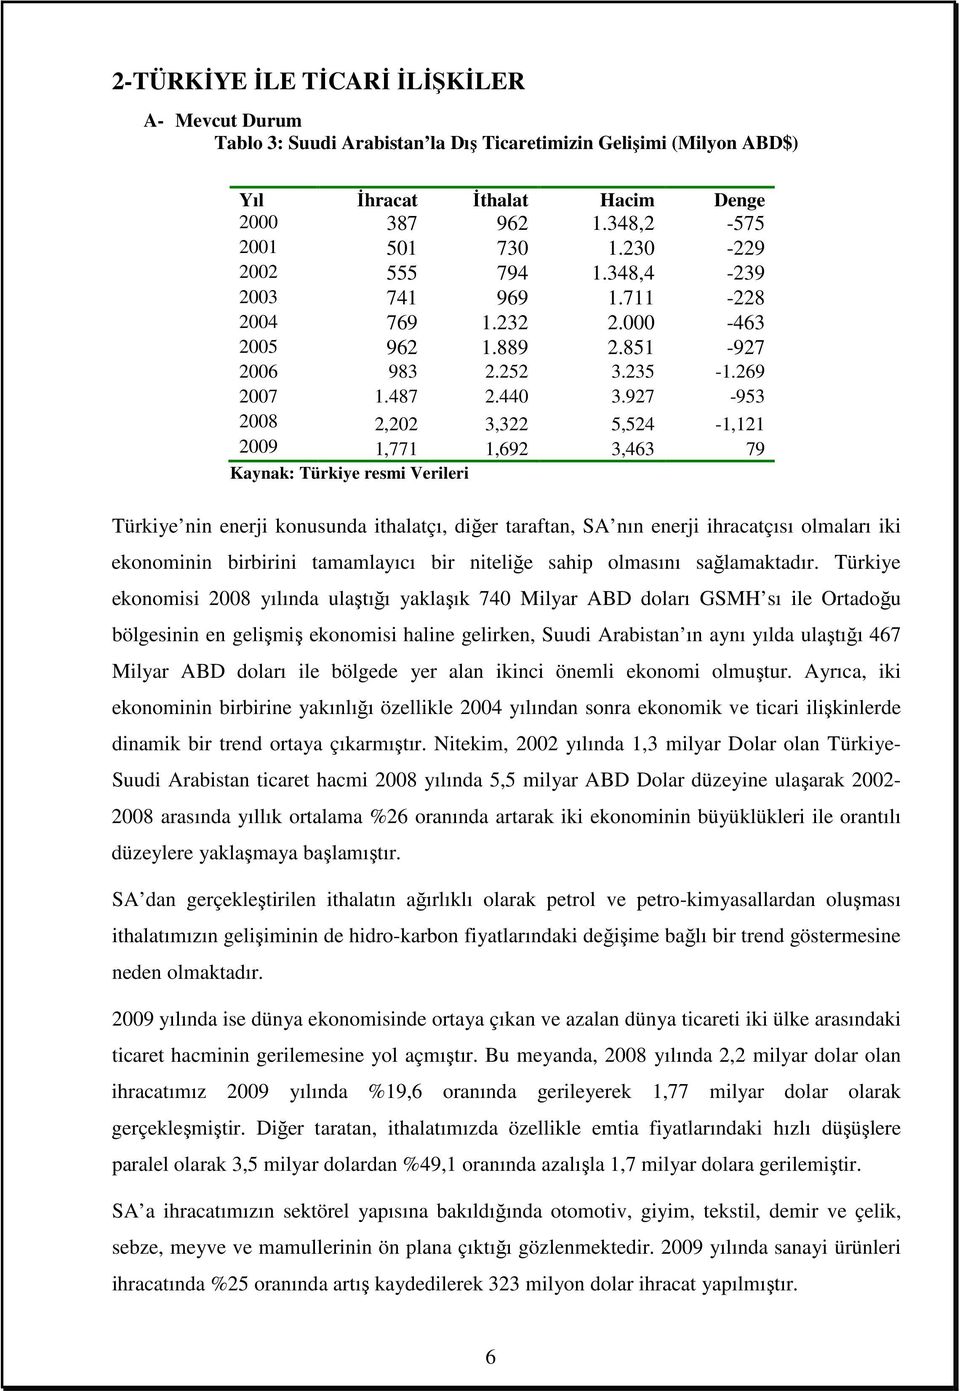 927-953 2008 2,202 3,322 5,524-1,121 2009 1,771 1,692 3,463 79 Kaynak: Türkiye resmi Verileri Türkiye nin enerji konusunda ithalatçı, diğer taraftan, SA nın enerji ihracatçısı olmaları iki ekonominin